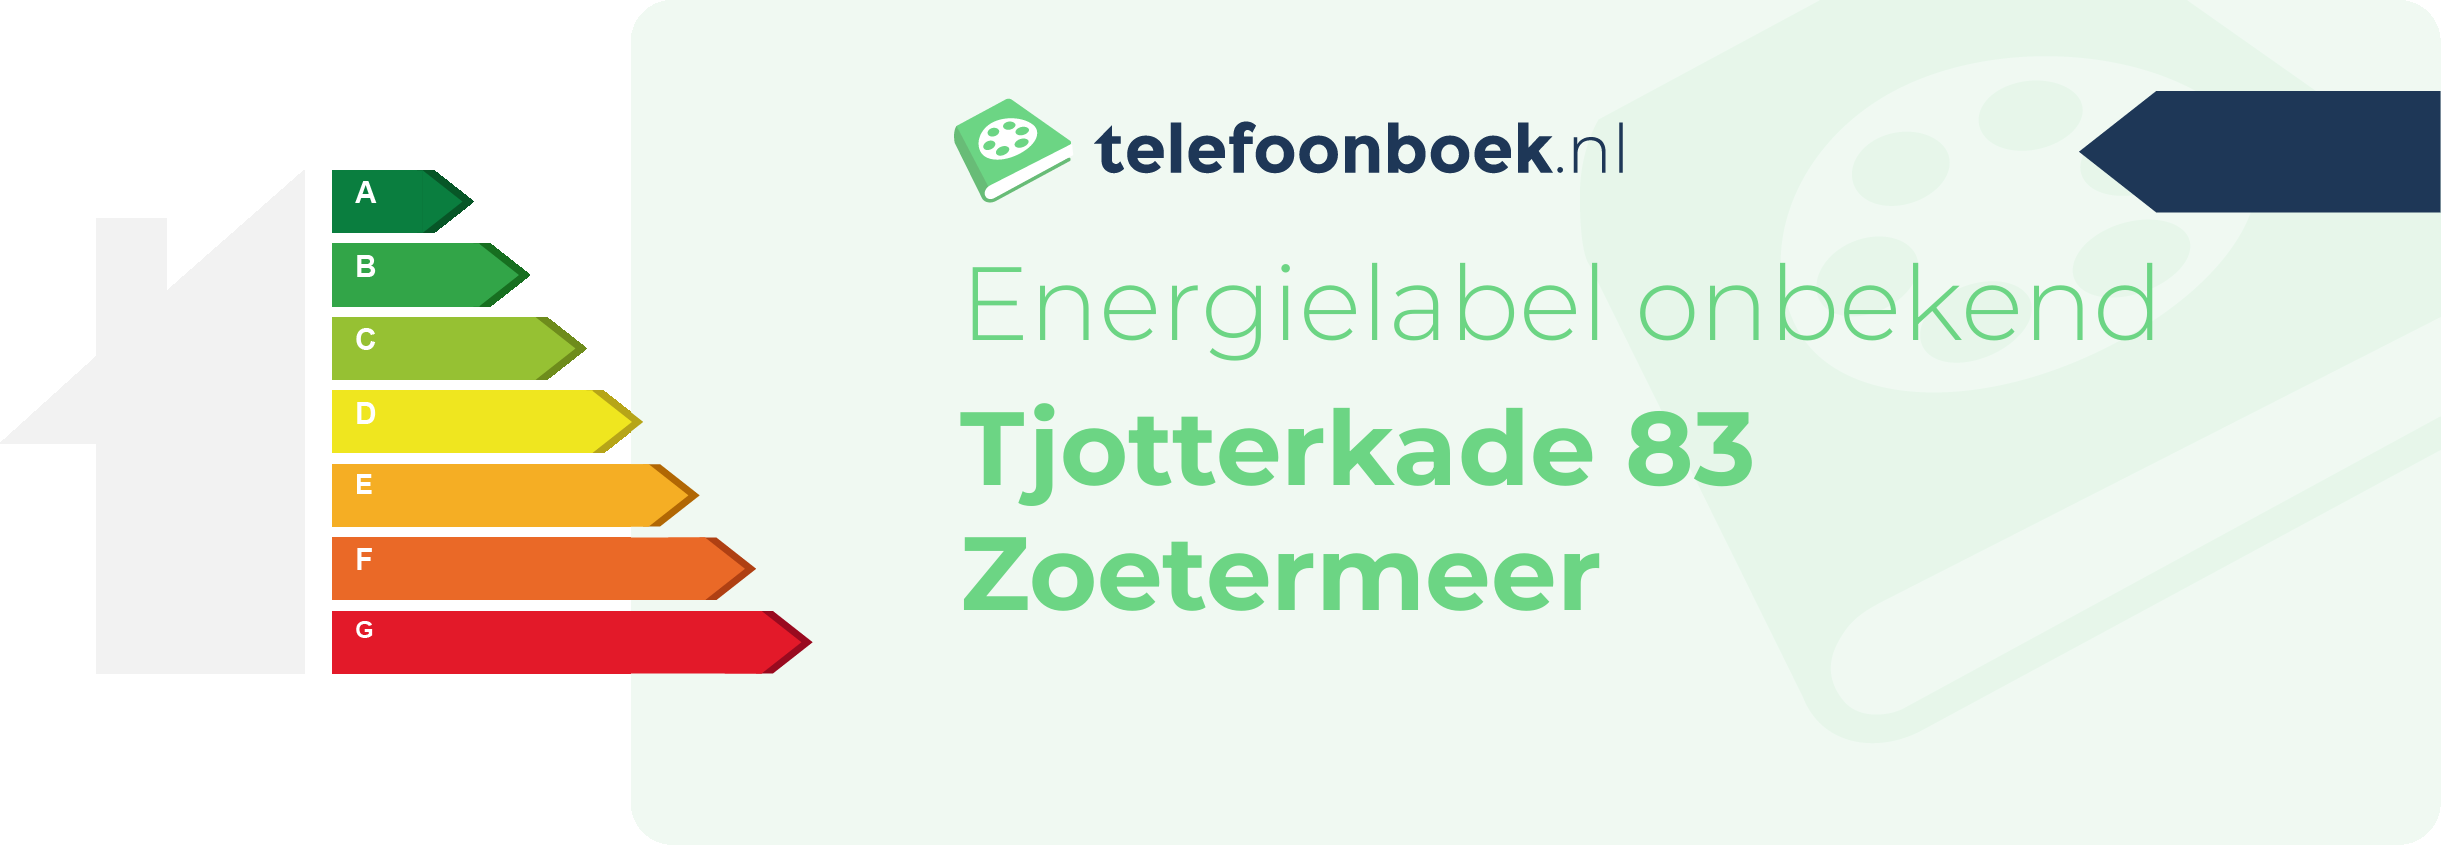 Energielabel Tjotterkade 83 Zoetermeer